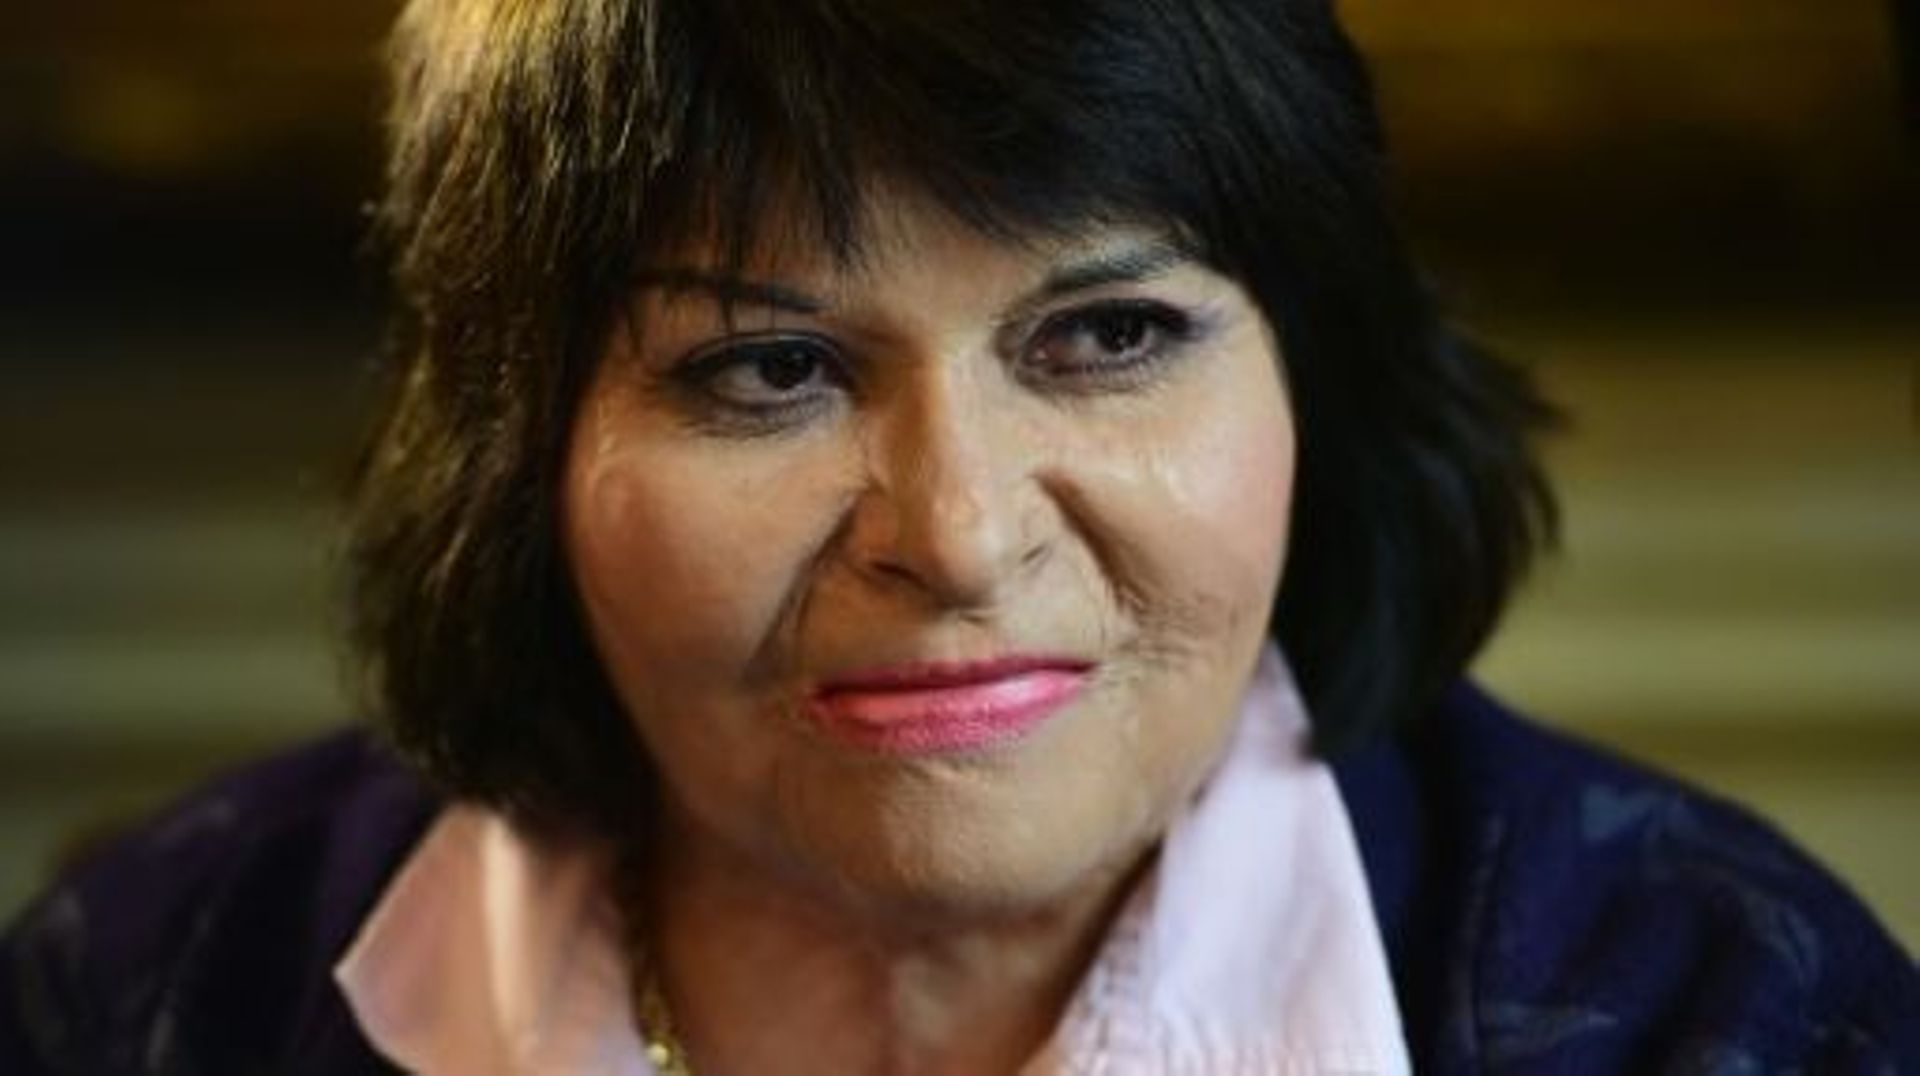 Carmen Gloria Quintana, qui avait été brûlée par des militaires en 1986, tout comme son ami Rodrigo Rojas de Negri, en conférence de presse à Santiago, au Chili, le 27 juillet 2015